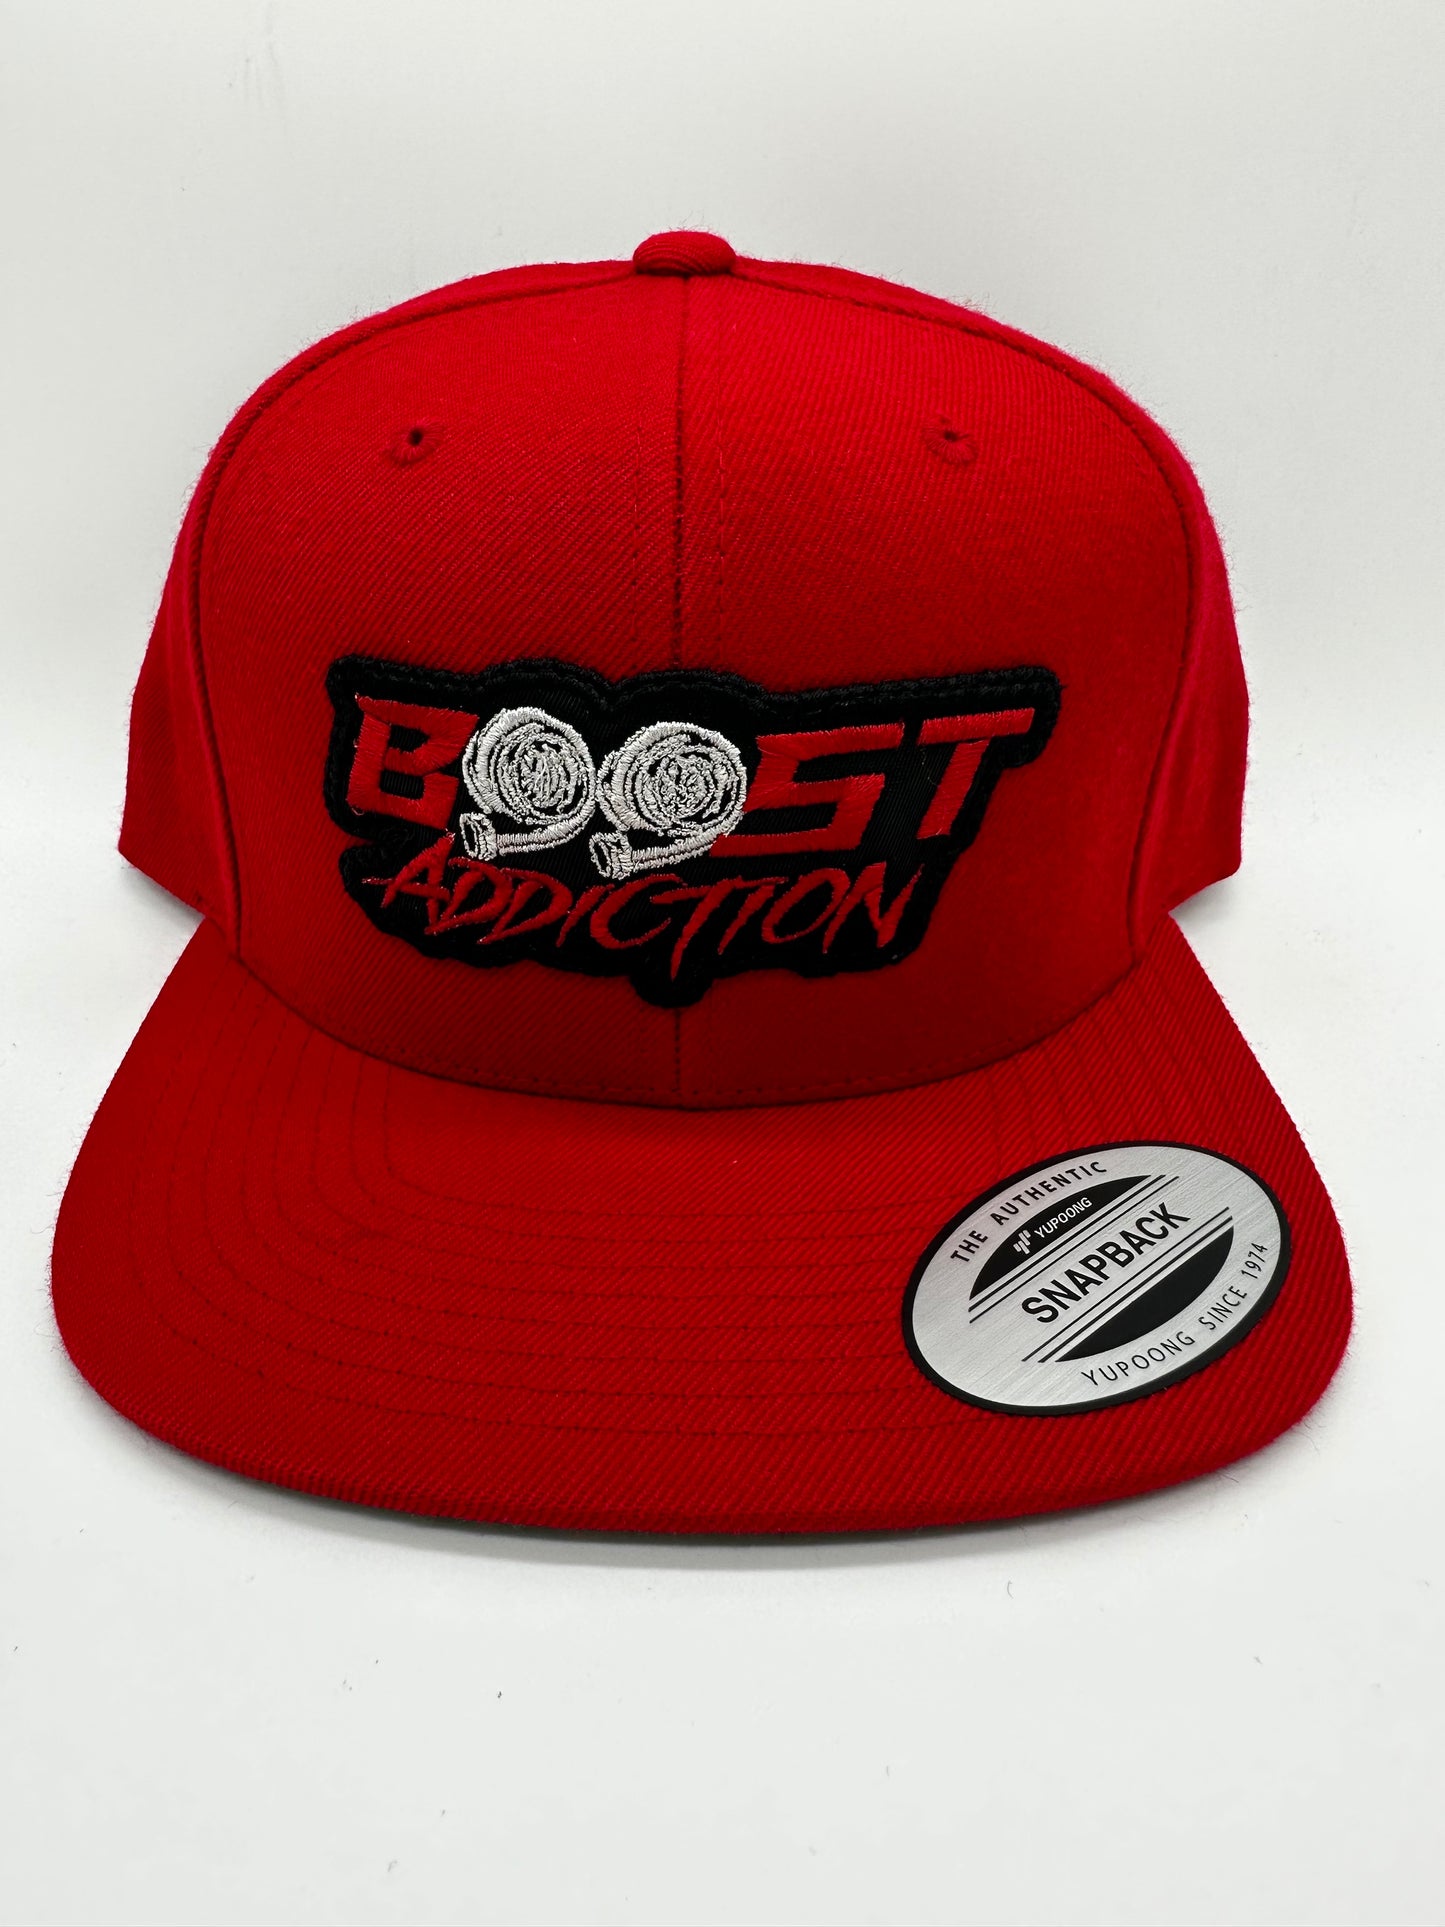 Boost Addiction Flat Bill Hat